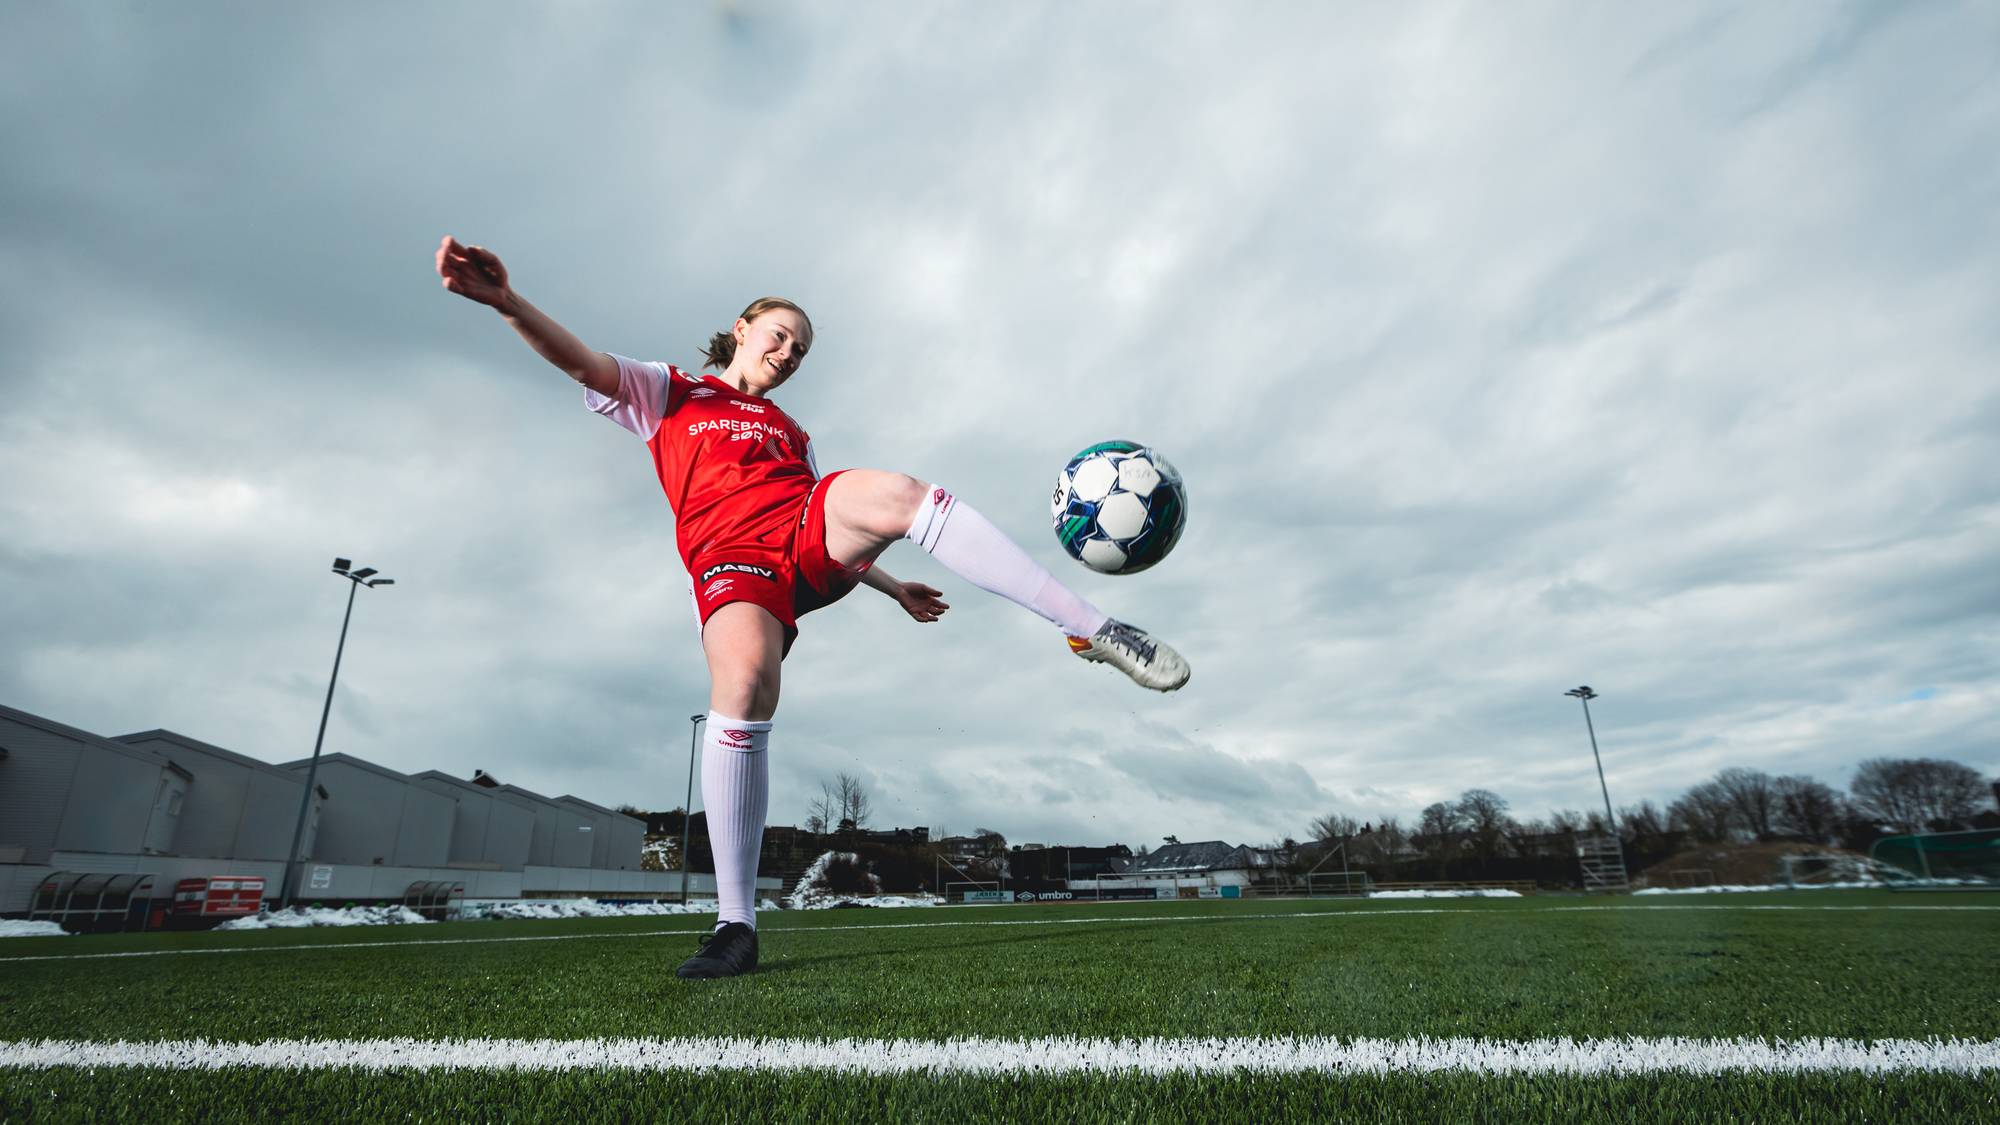 Bilde av Karina som sparker en fotball. Hun har på seg en rød og hvit fotballdrakt og er plassert på en fotballstadion. 